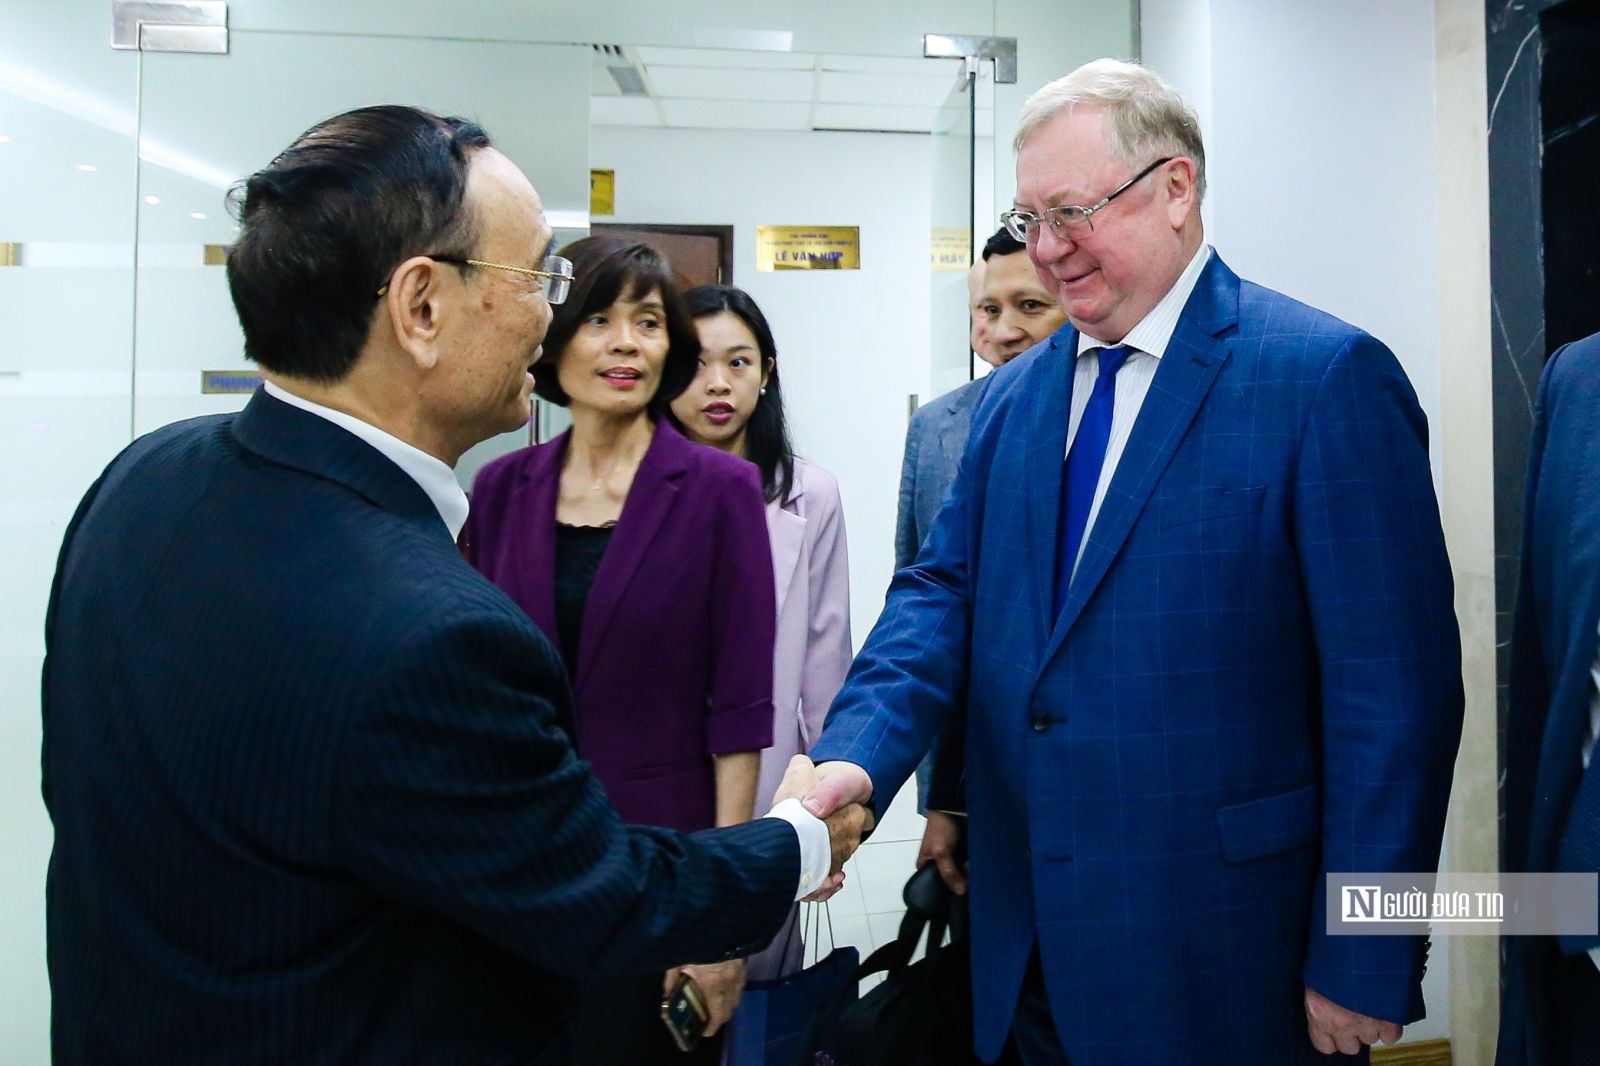 Chủ tịch Hội Luật gia Liên bang Nga thăm và làm việc với Hội Luật gia Việt Nam